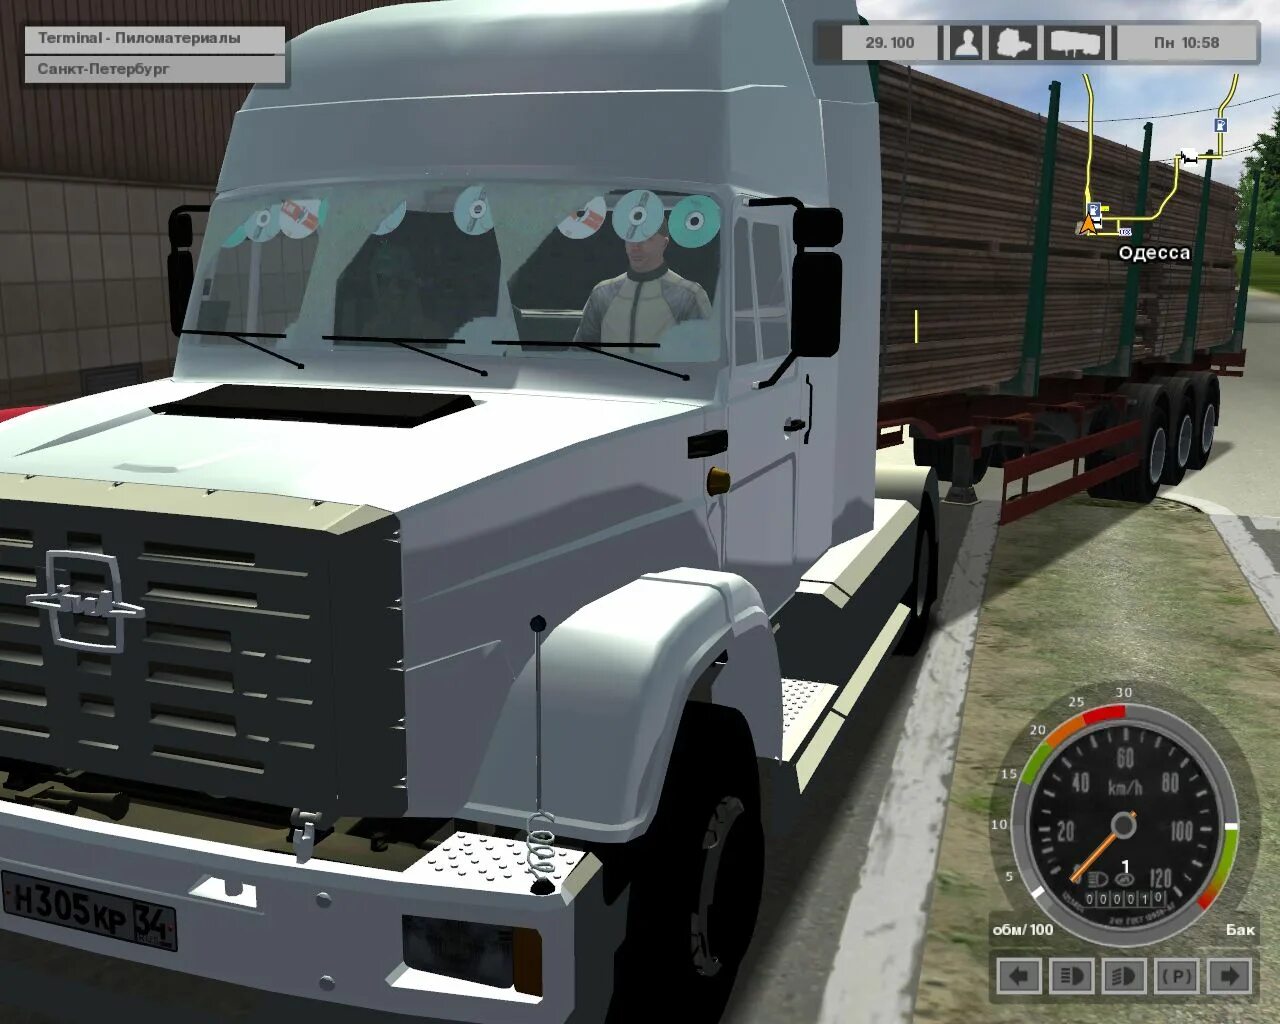 Euro Truck Simulator 1. Euro Truck Simulator 2009. Euro Truck Simulator Post USSR. Euro Truck Simulator Post USSR 2009. Игра евро трек симулятор 1